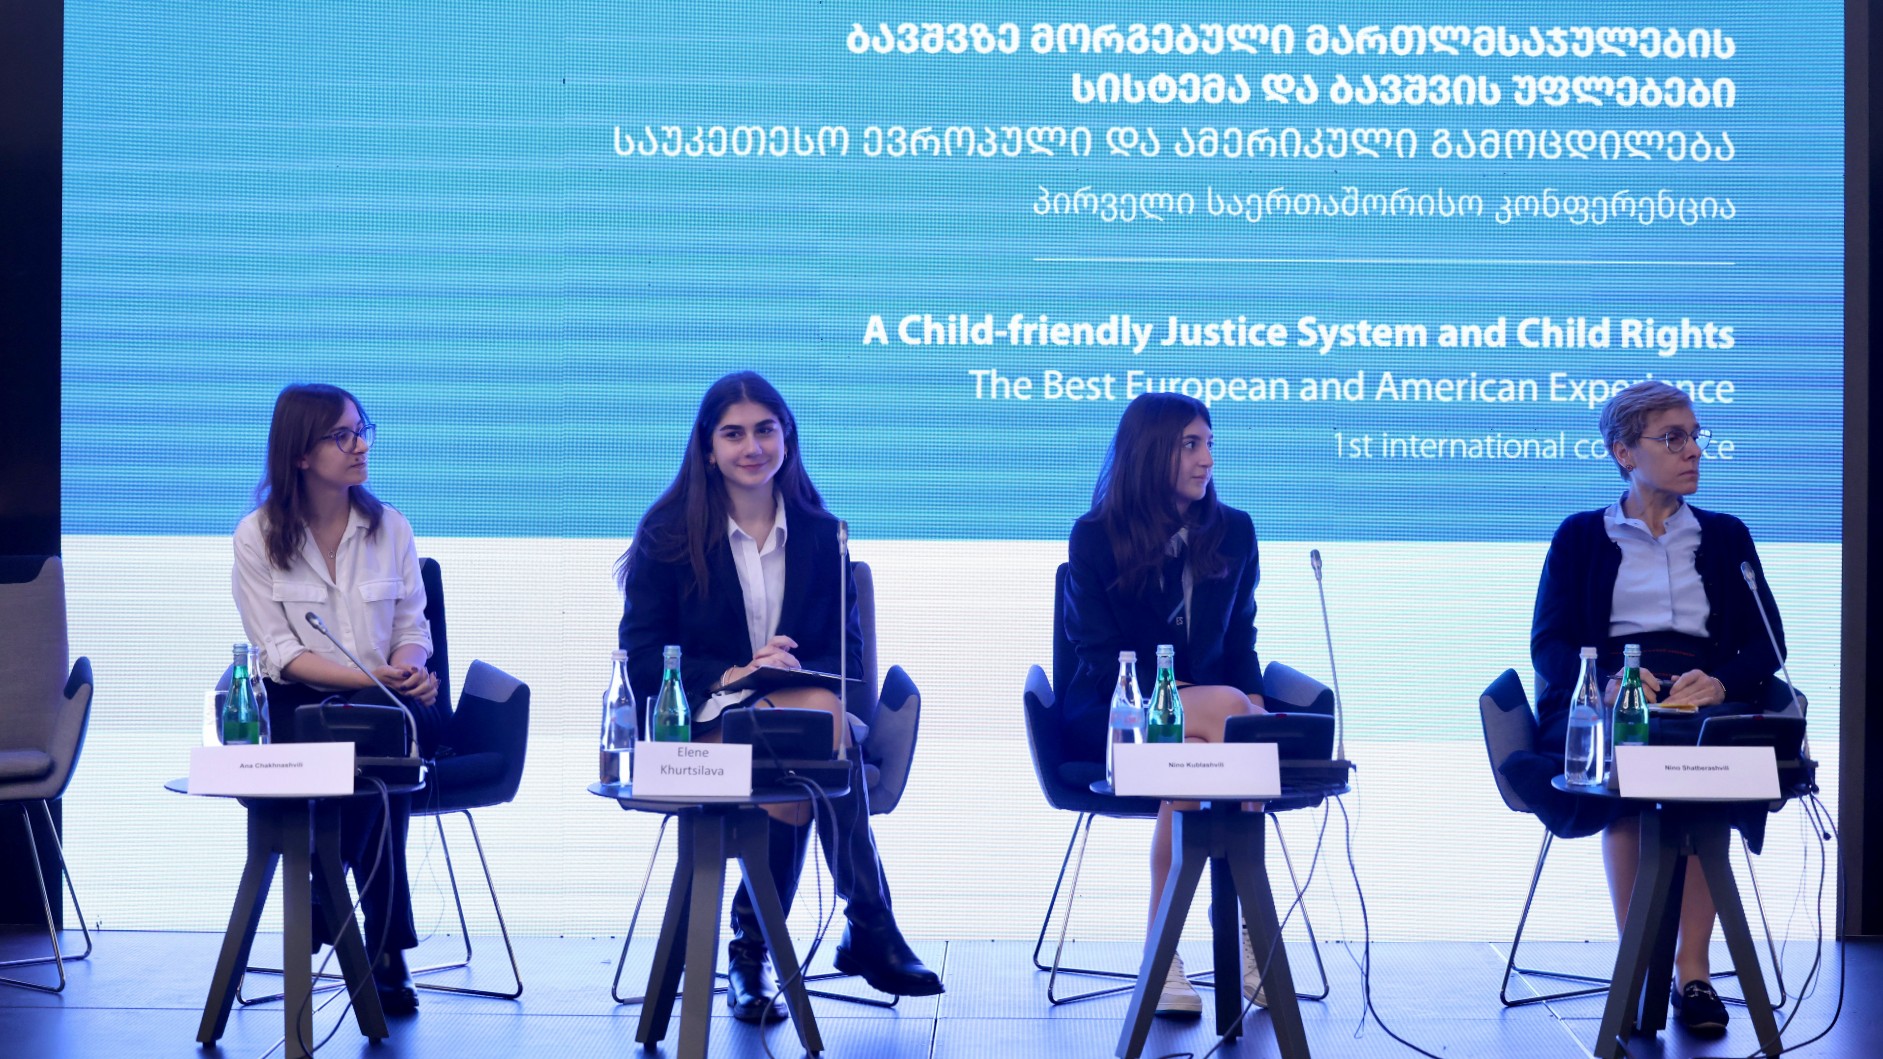 ბავშვზე მორგებული მართლმსაჯულების სისტემა და ბავშვის უფლებები - საუკეთესო ევროპული და ამერიკული გამოცდილება